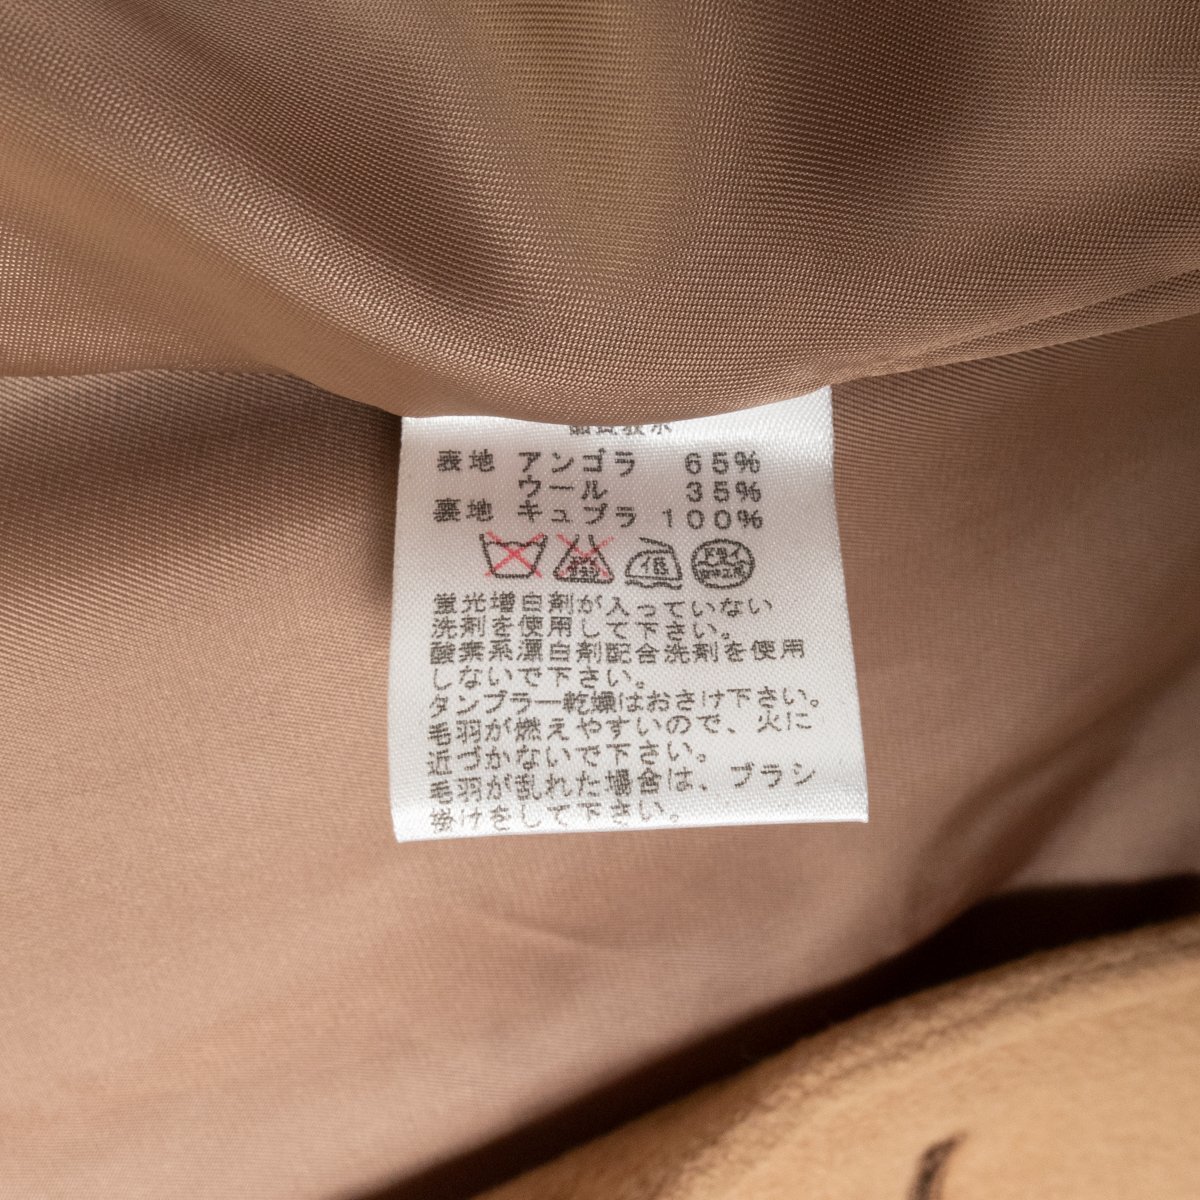 Maker's Shirt 鎌倉シャツ アンゴラウール テーラードカラーコート アウター フェミニン 大人きれいめ 黄土色 キャメル M レディース_画像9